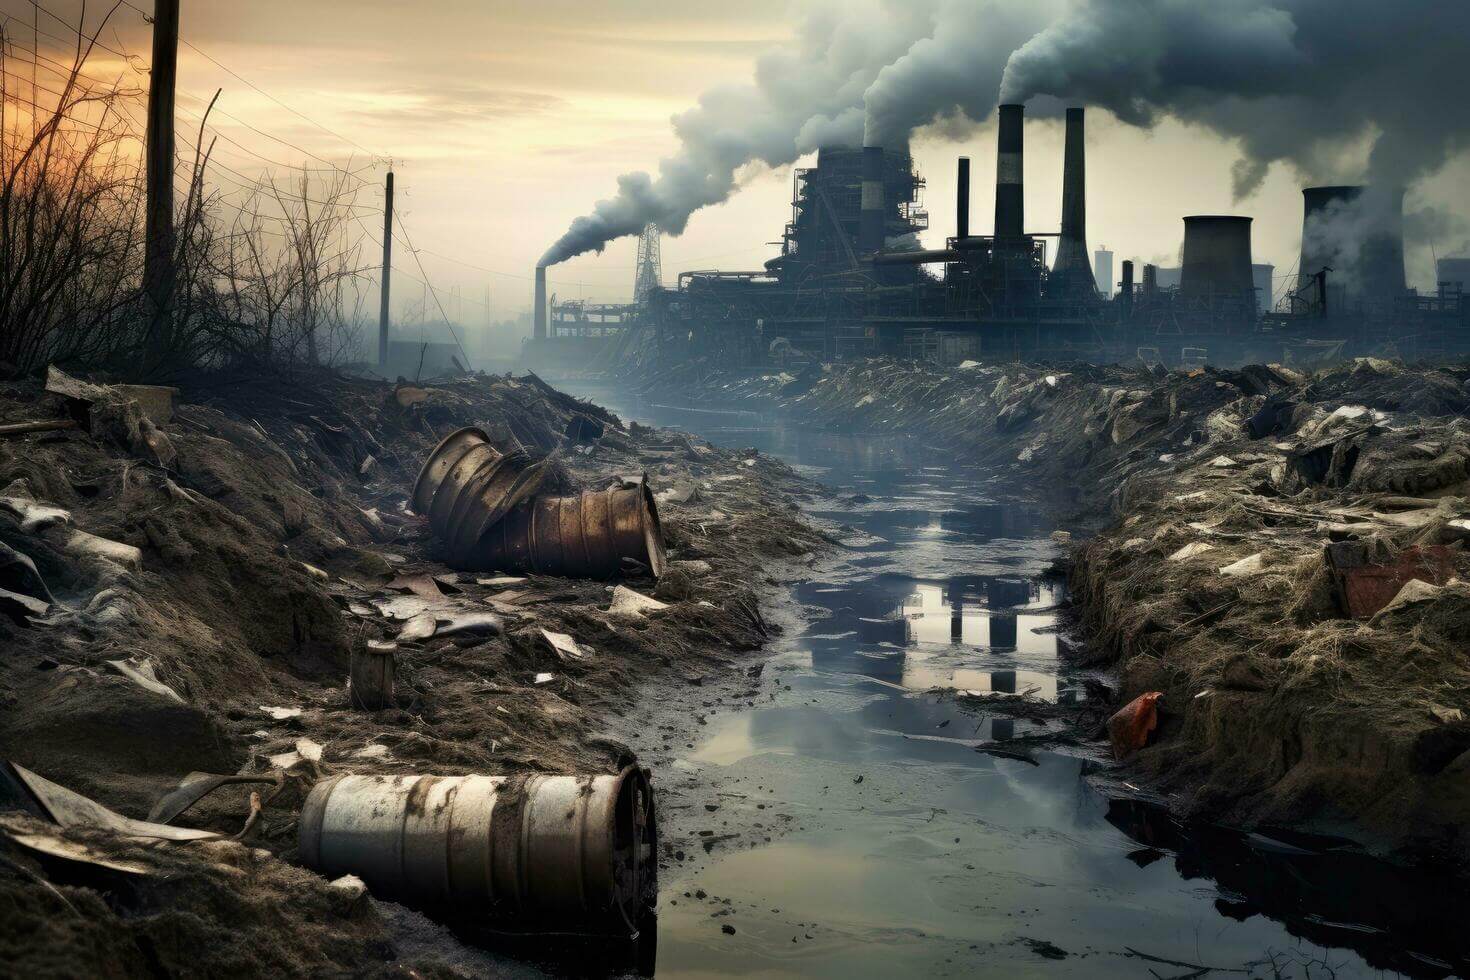 Под контролем корпораций. Загрязнение окружающей среды приводит к росту преждевременной смертности. Изображение: static.vecteezy.com. Фото.